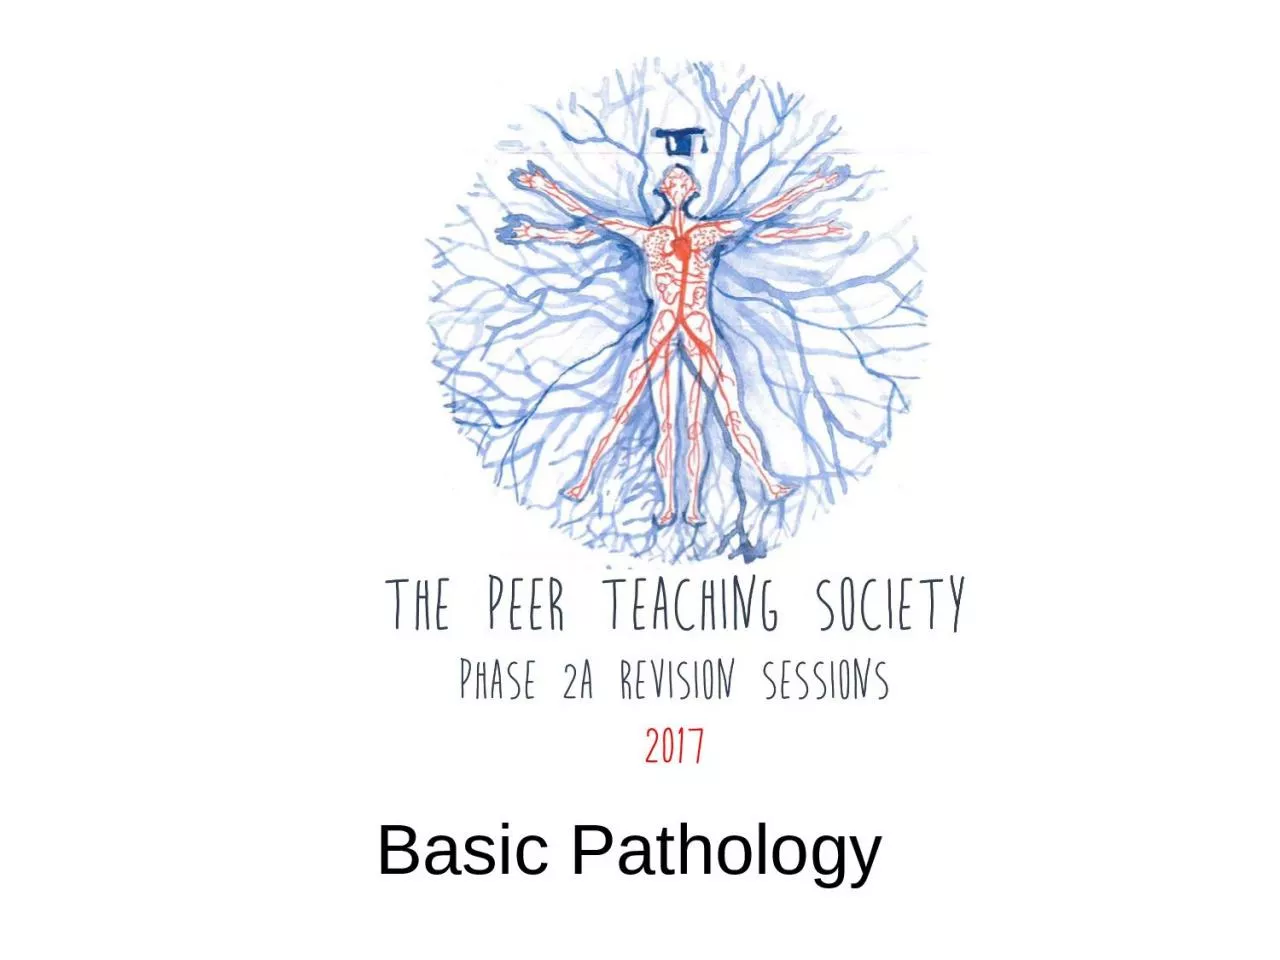 Basic Pathology        Phase 2a Revision Session